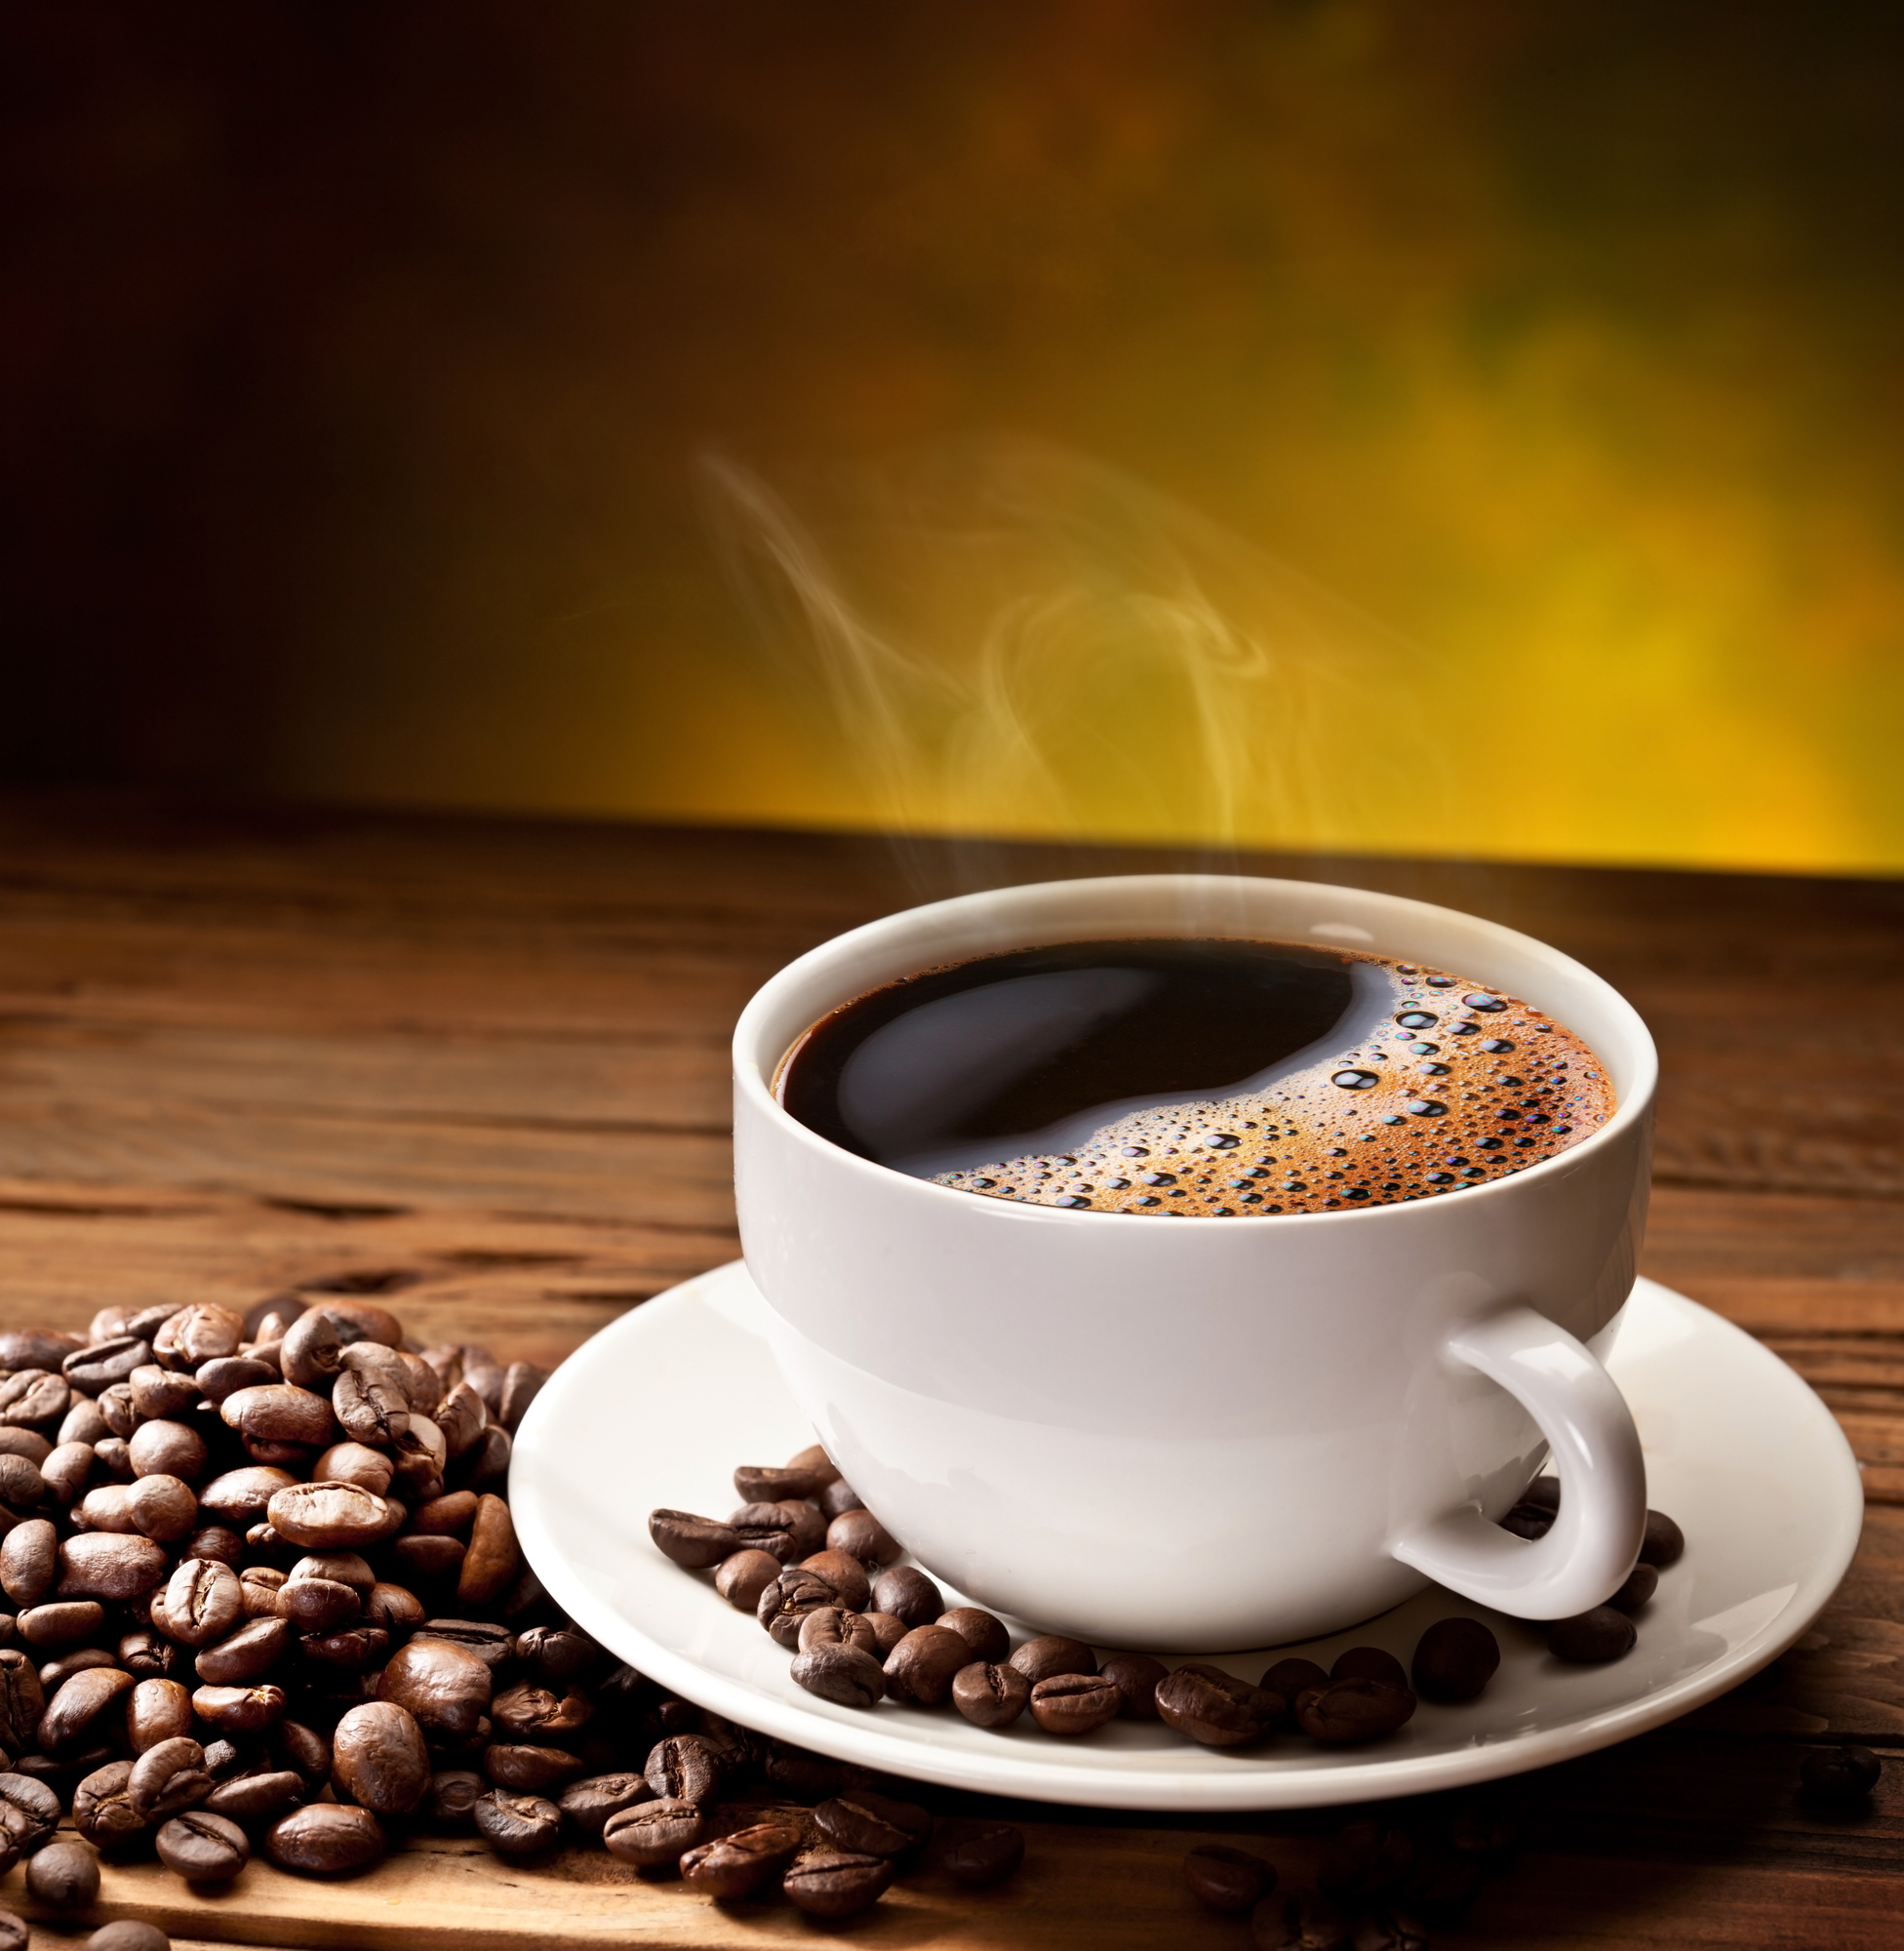 oljica tople kafe je zdravija od hladne, foto: Depositphotos